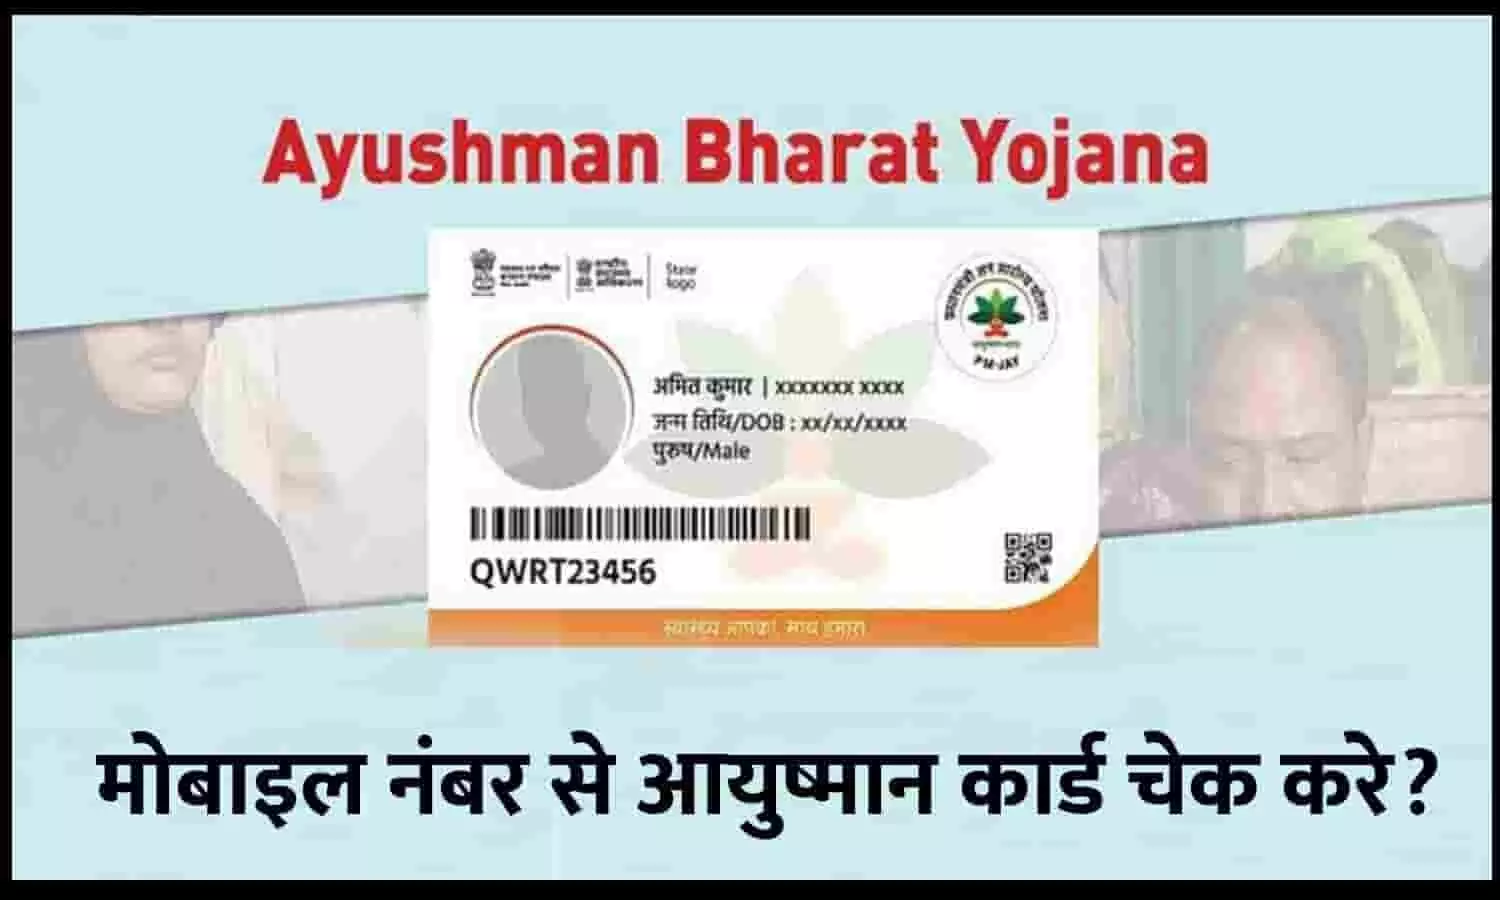 Mobile Number Se Ayushman Card Kaise Check Kare 2023: मोबाइल नंबर से चेक करे 5 लाख फ्री इलाज वाला आयुष्मान कार्ड बना है या नहीं? ये है तरीका